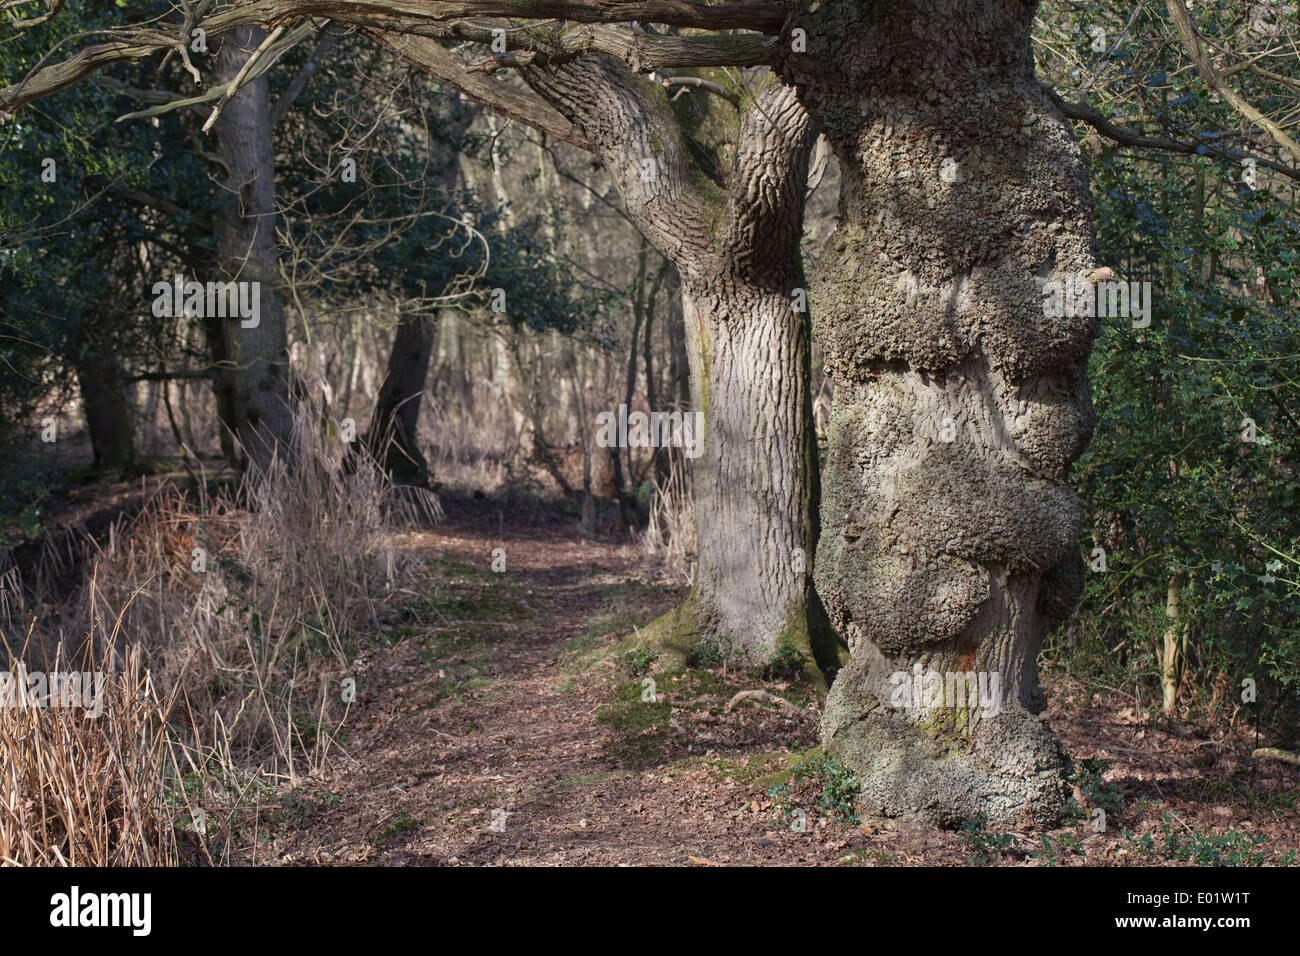 Englische Eichen (Quercus Robur). Reihe von Baumstämmen entlang der Linie einer Zeit letzten Hecke. Beachten Sie die normale rissige Rinde. Stockfoto